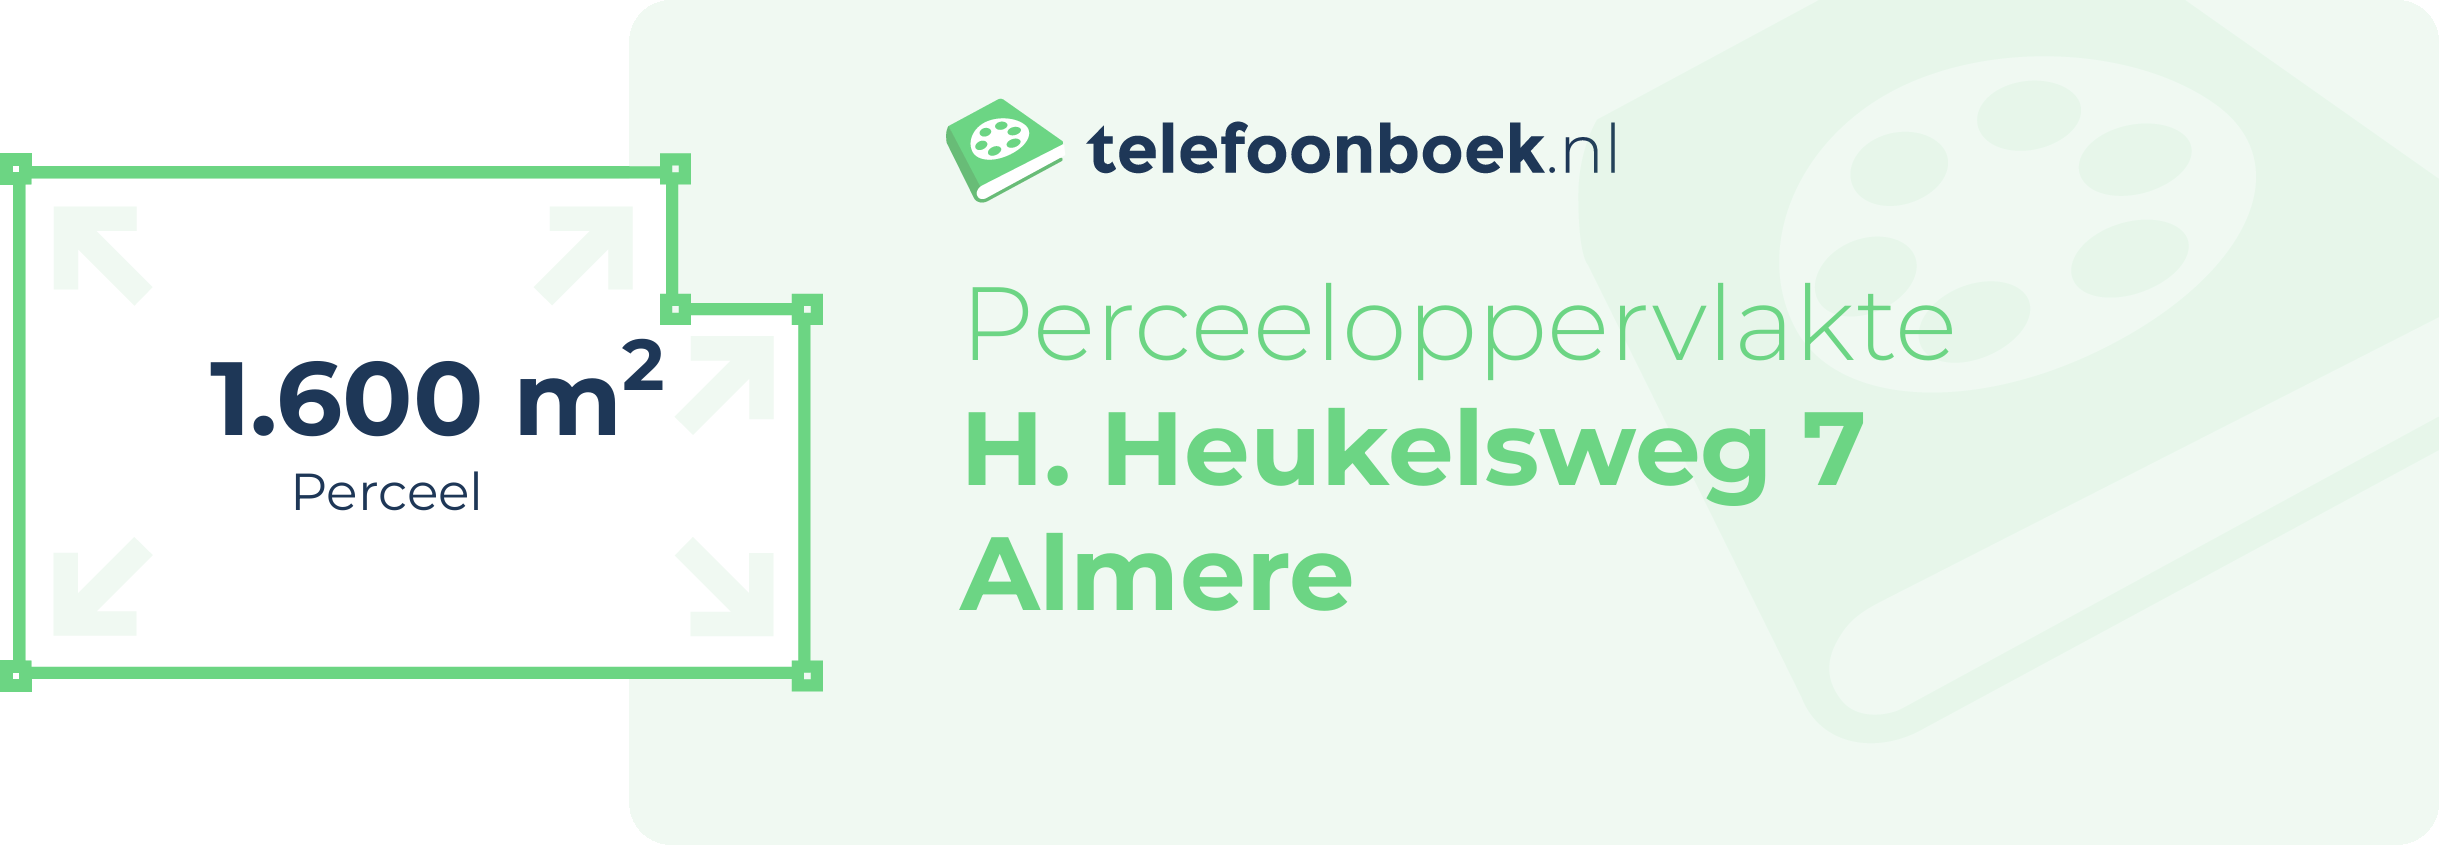 Perceeloppervlakte H. Heukelsweg 7 Almere